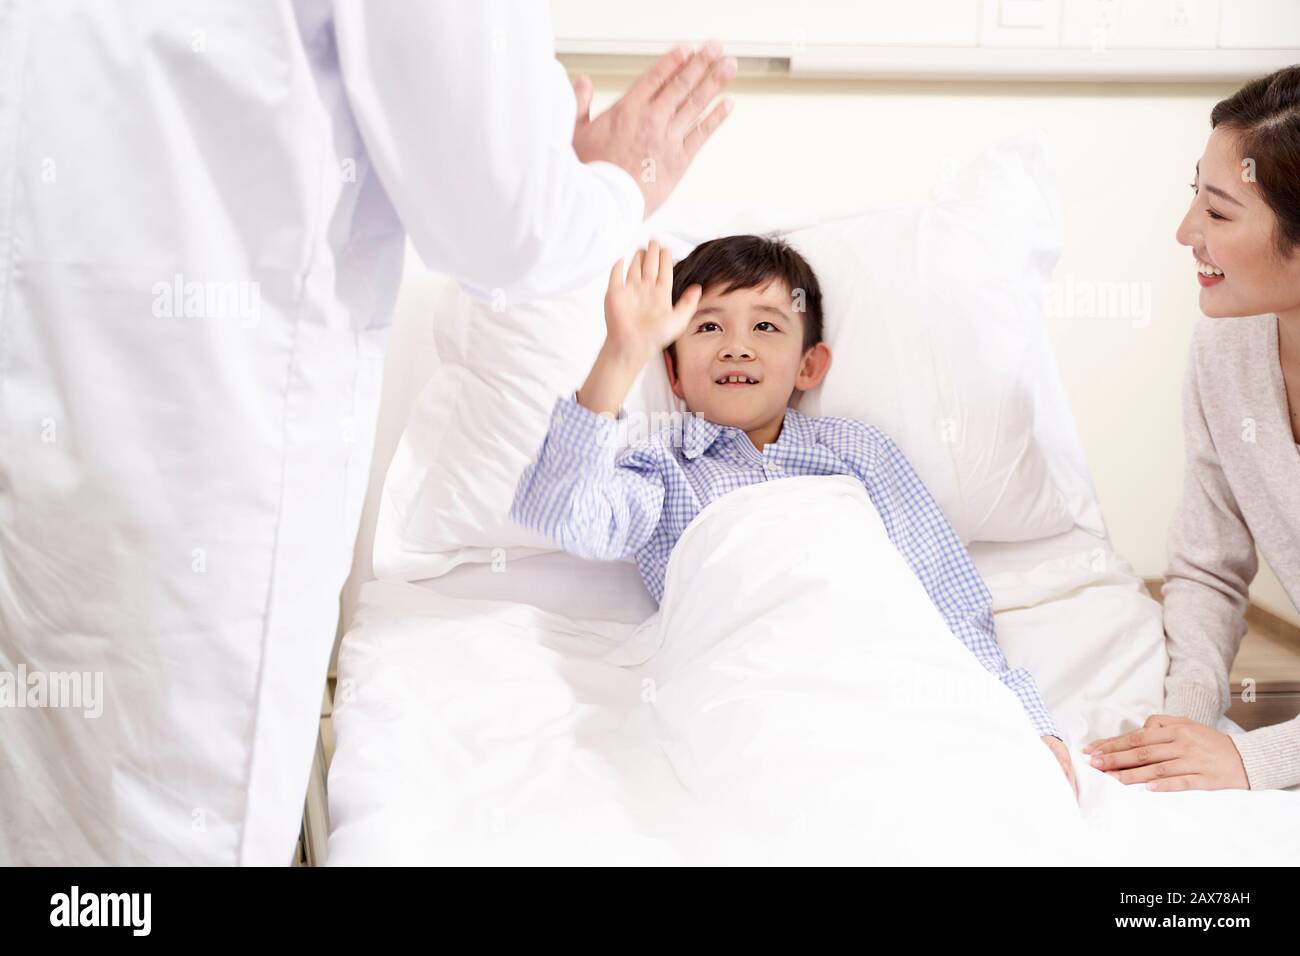 Glückliches fünf Jahre altes asiatisches Kind, das im Bett in der Krankenstation liegt und dem Arzt einen Hi-Five gibt Stockfoto